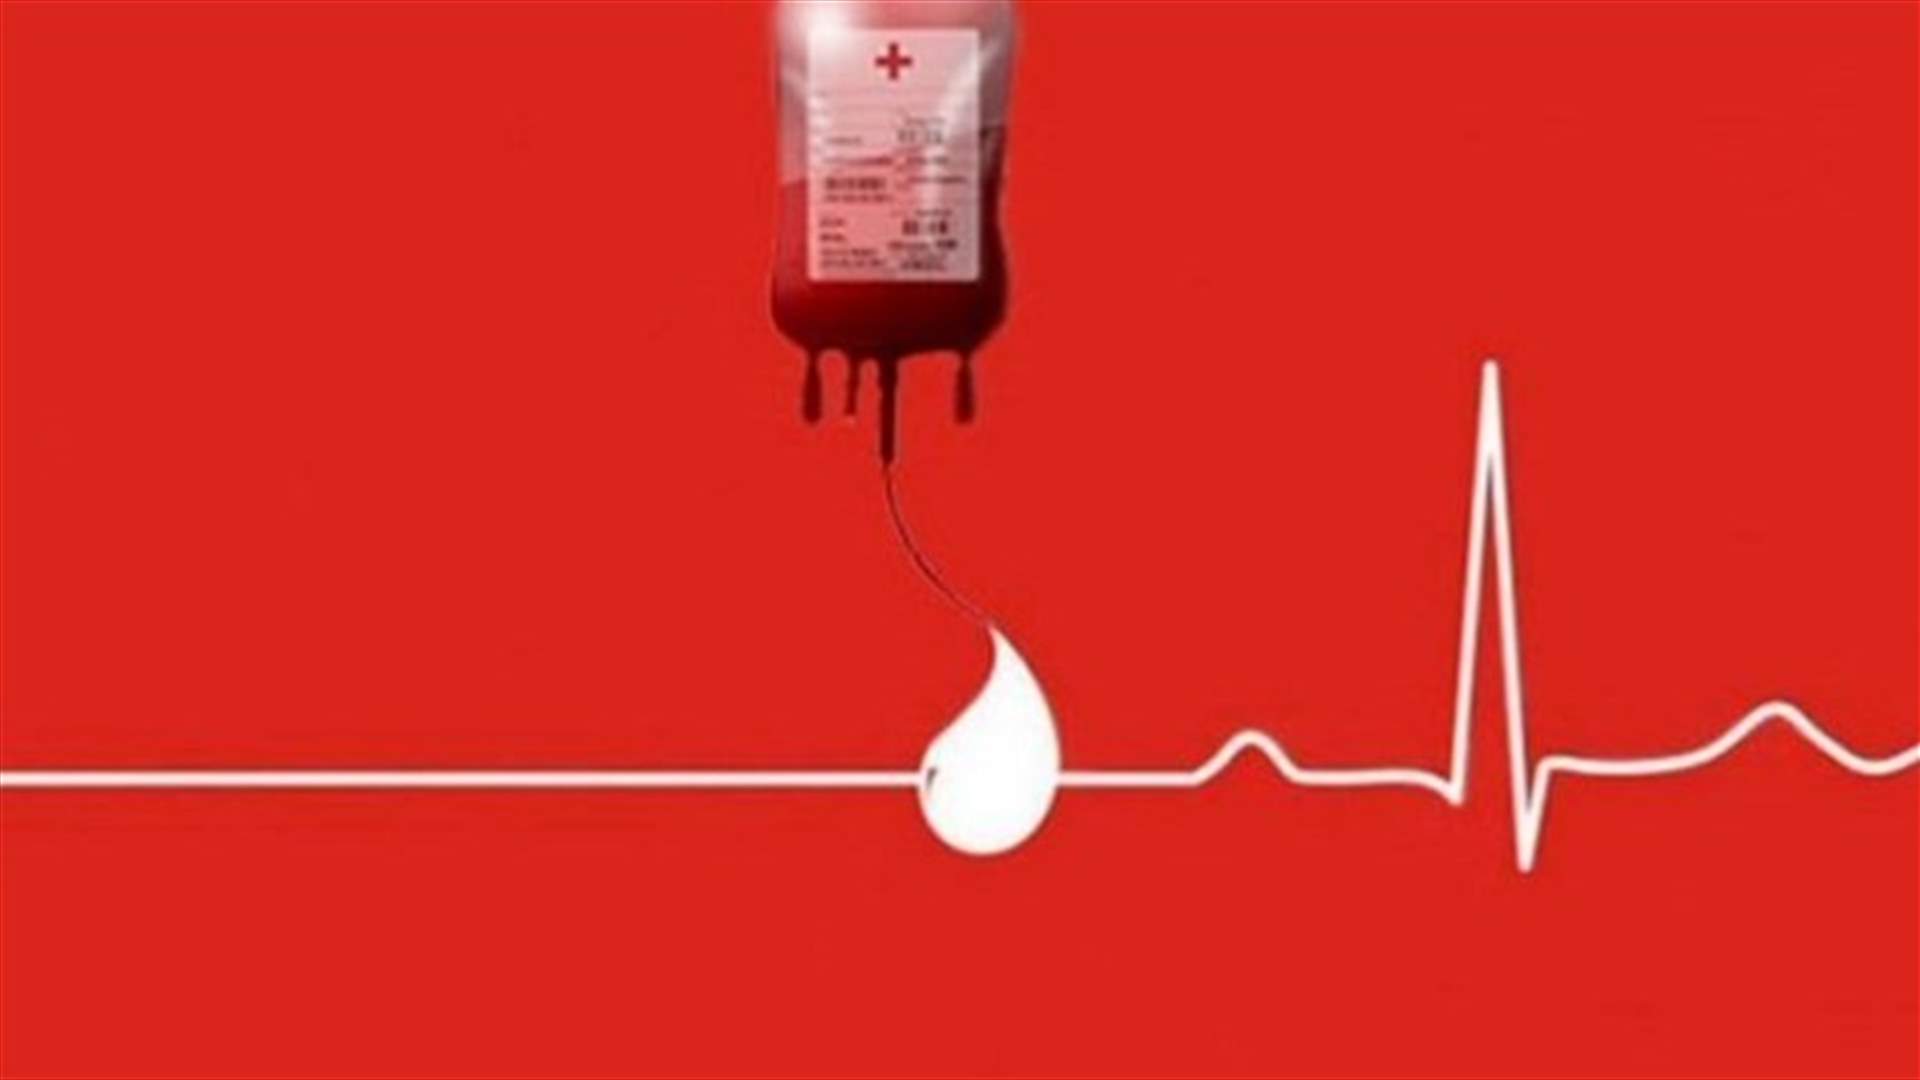 مريض في مستشفى جبل لبنان بحاجة ماسة الى دم من فئة O+ أو O- من متبرع شفي من كورونا منذ شهرين... للتبرع الاتصال على 03668468